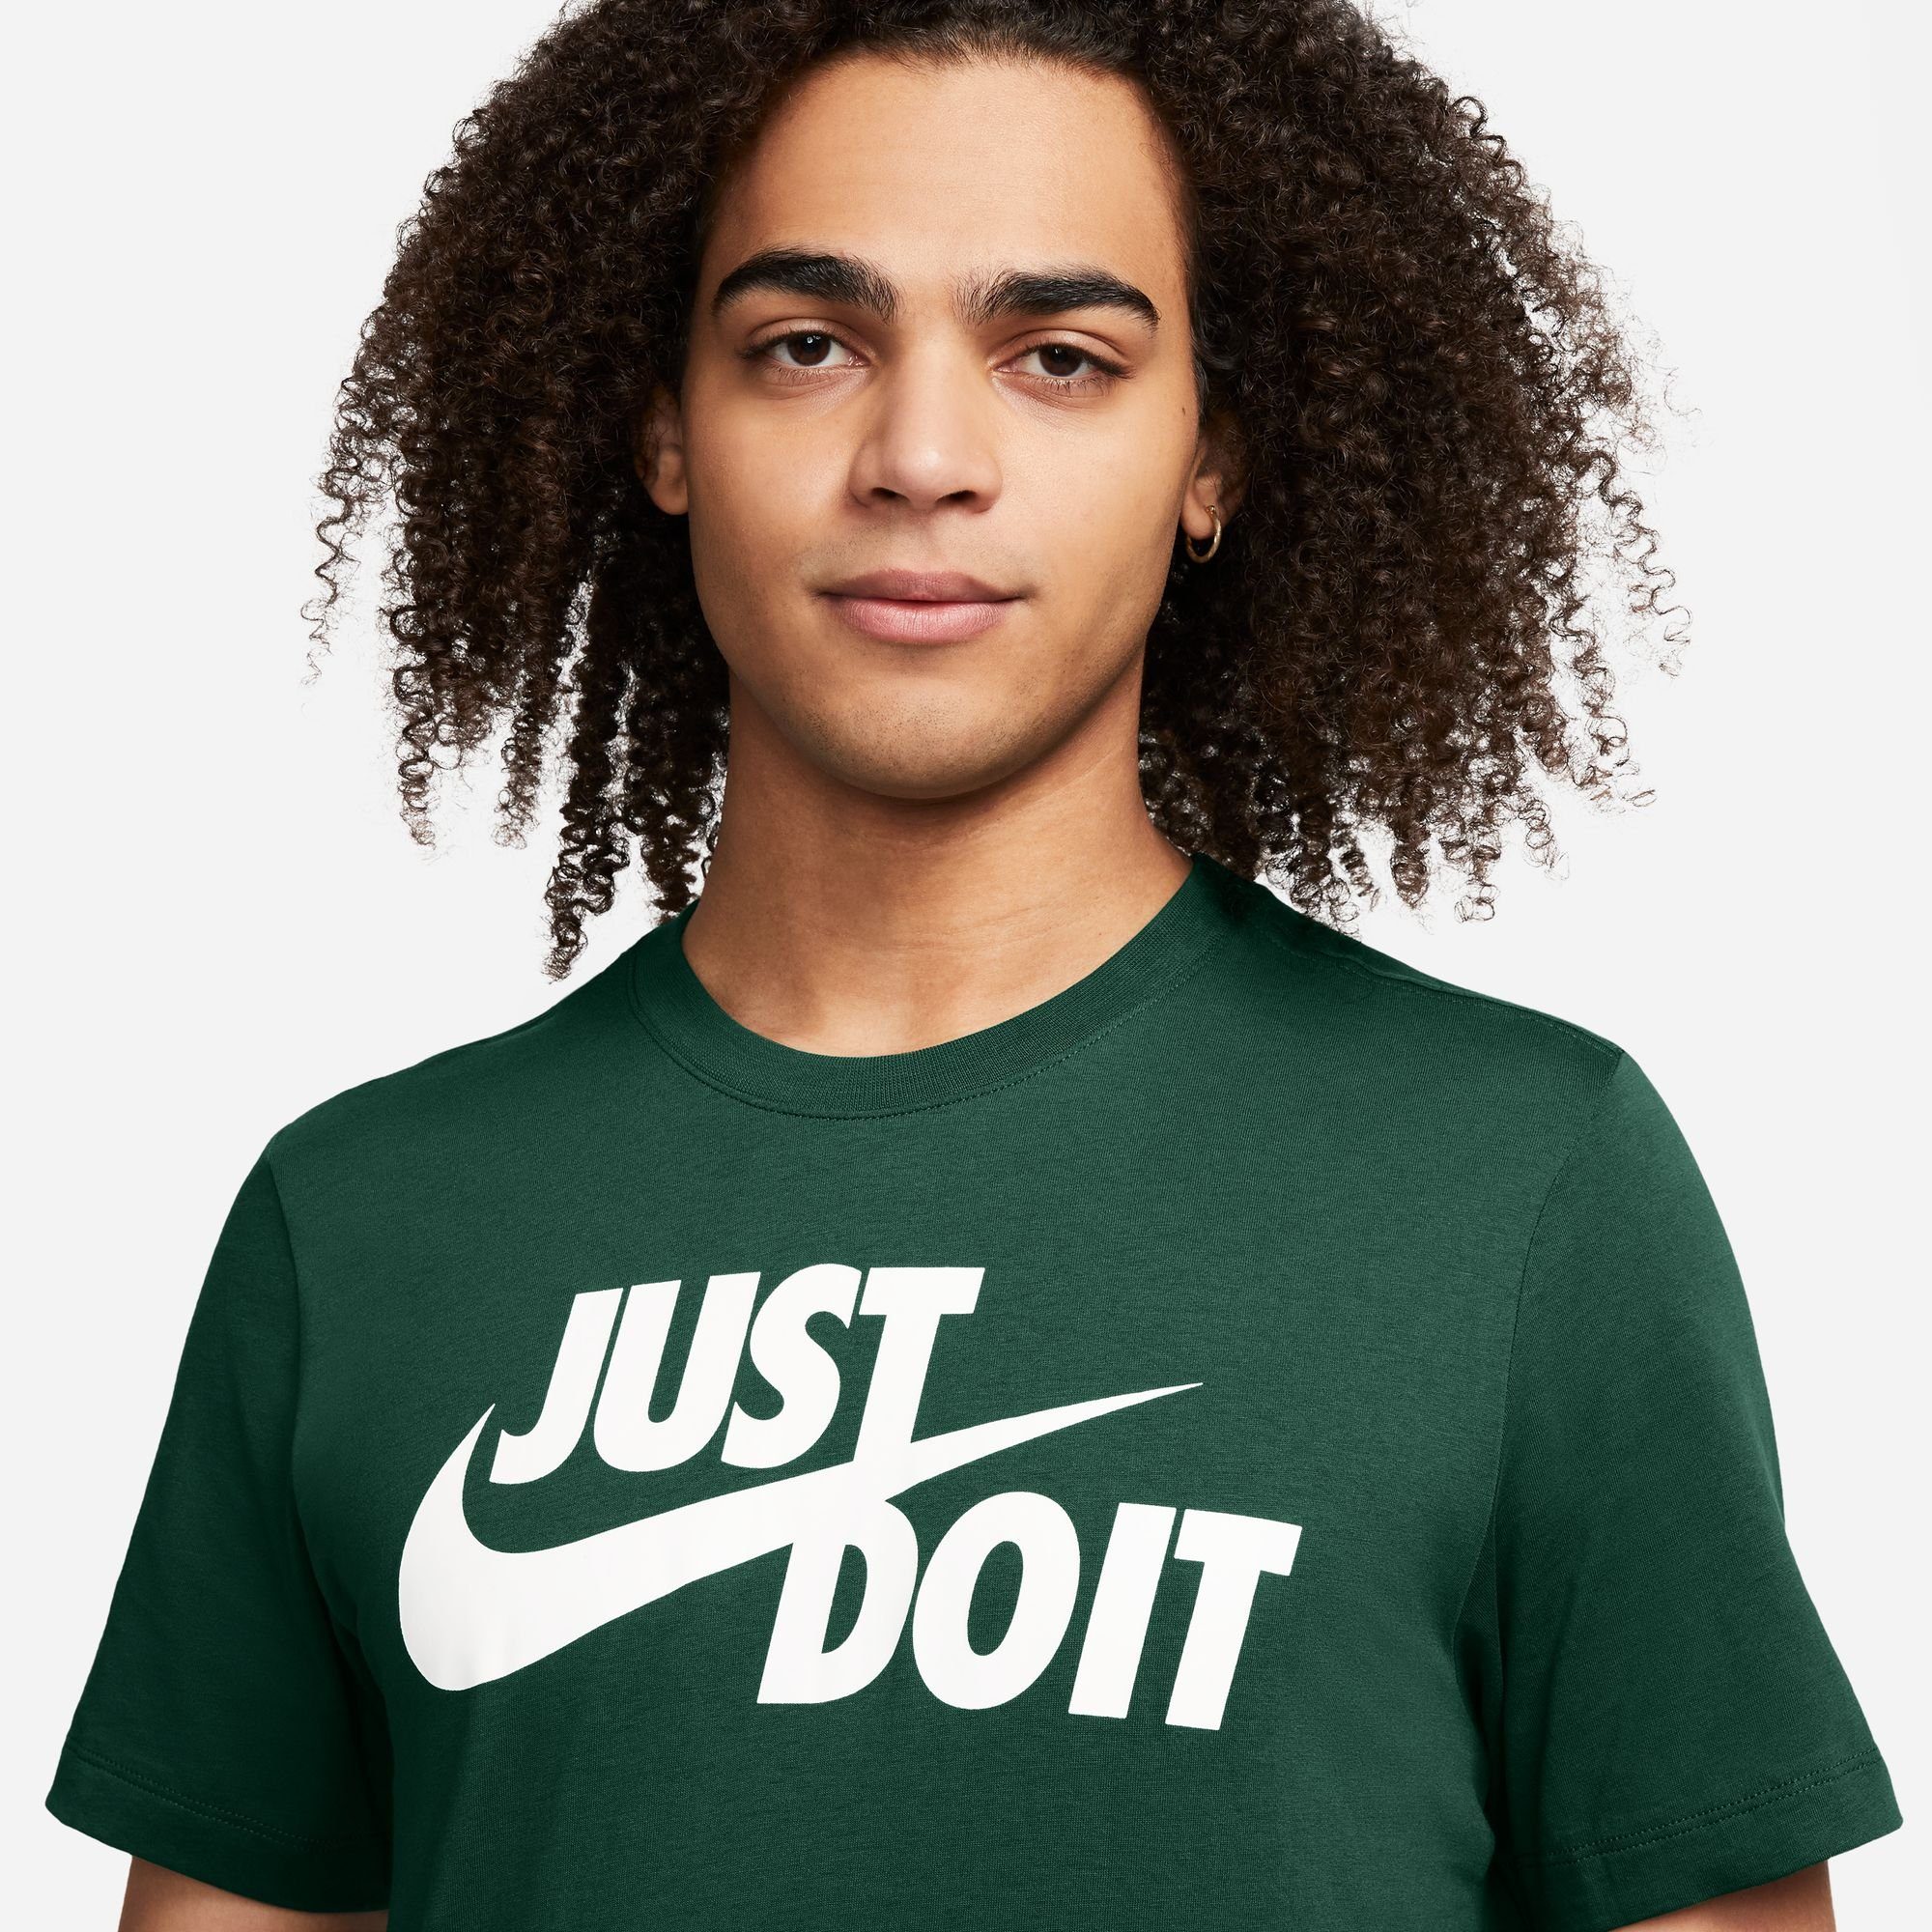 Nike Sportswear T-shirt JDI Men's T-Shirt